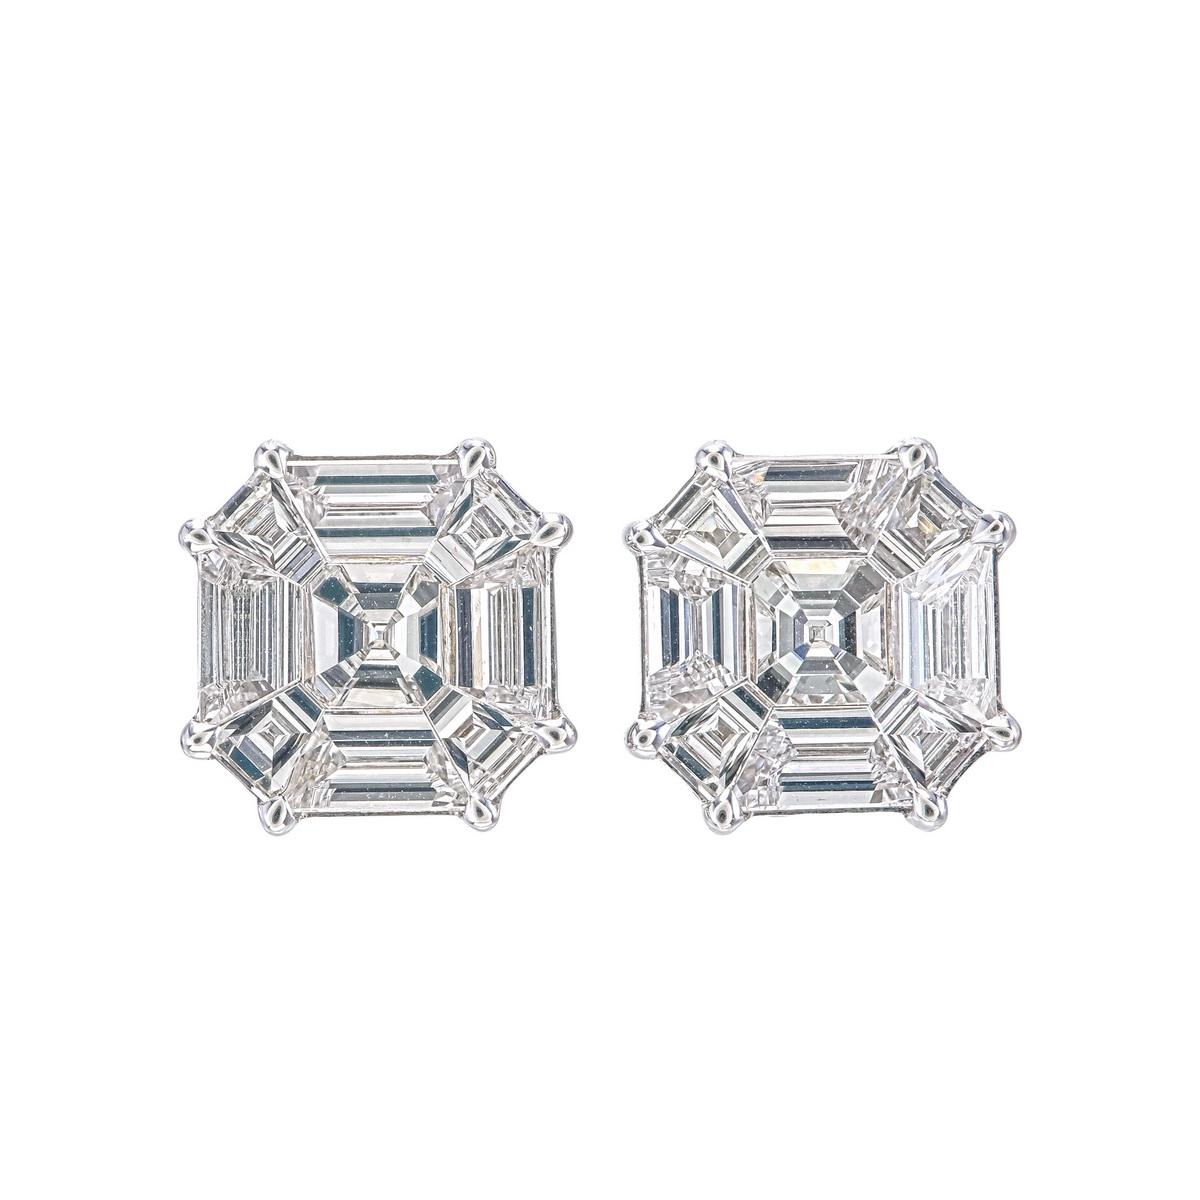 Dieses Paar Ohrringe besteht aus 3,60 Karat Diamanten in einer Kompositfassung, die das Aussehen eines 10+ Karat Paares ergibt.
Jeder Diamant wird geschliffen und poliert, um die Form eines ASSCHER geschliffenen Diamanten nach der Fassung anzupassen